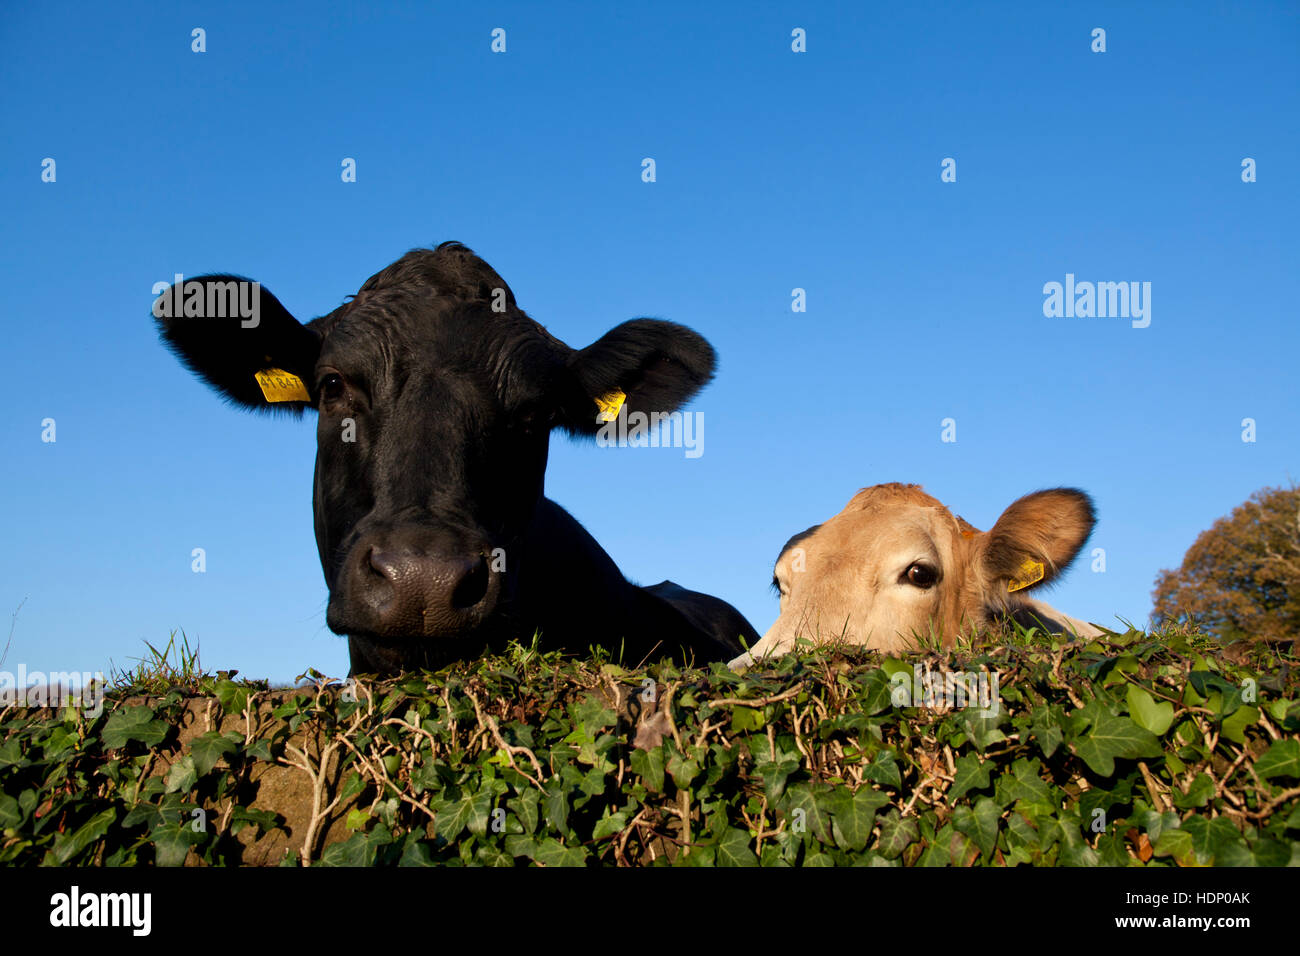 Europa, en Alemania, en Renania del Norte-Westfalia, Herdecke, las vacas están mirando por encima de un muro cubierto de hiedra. Foto de stock